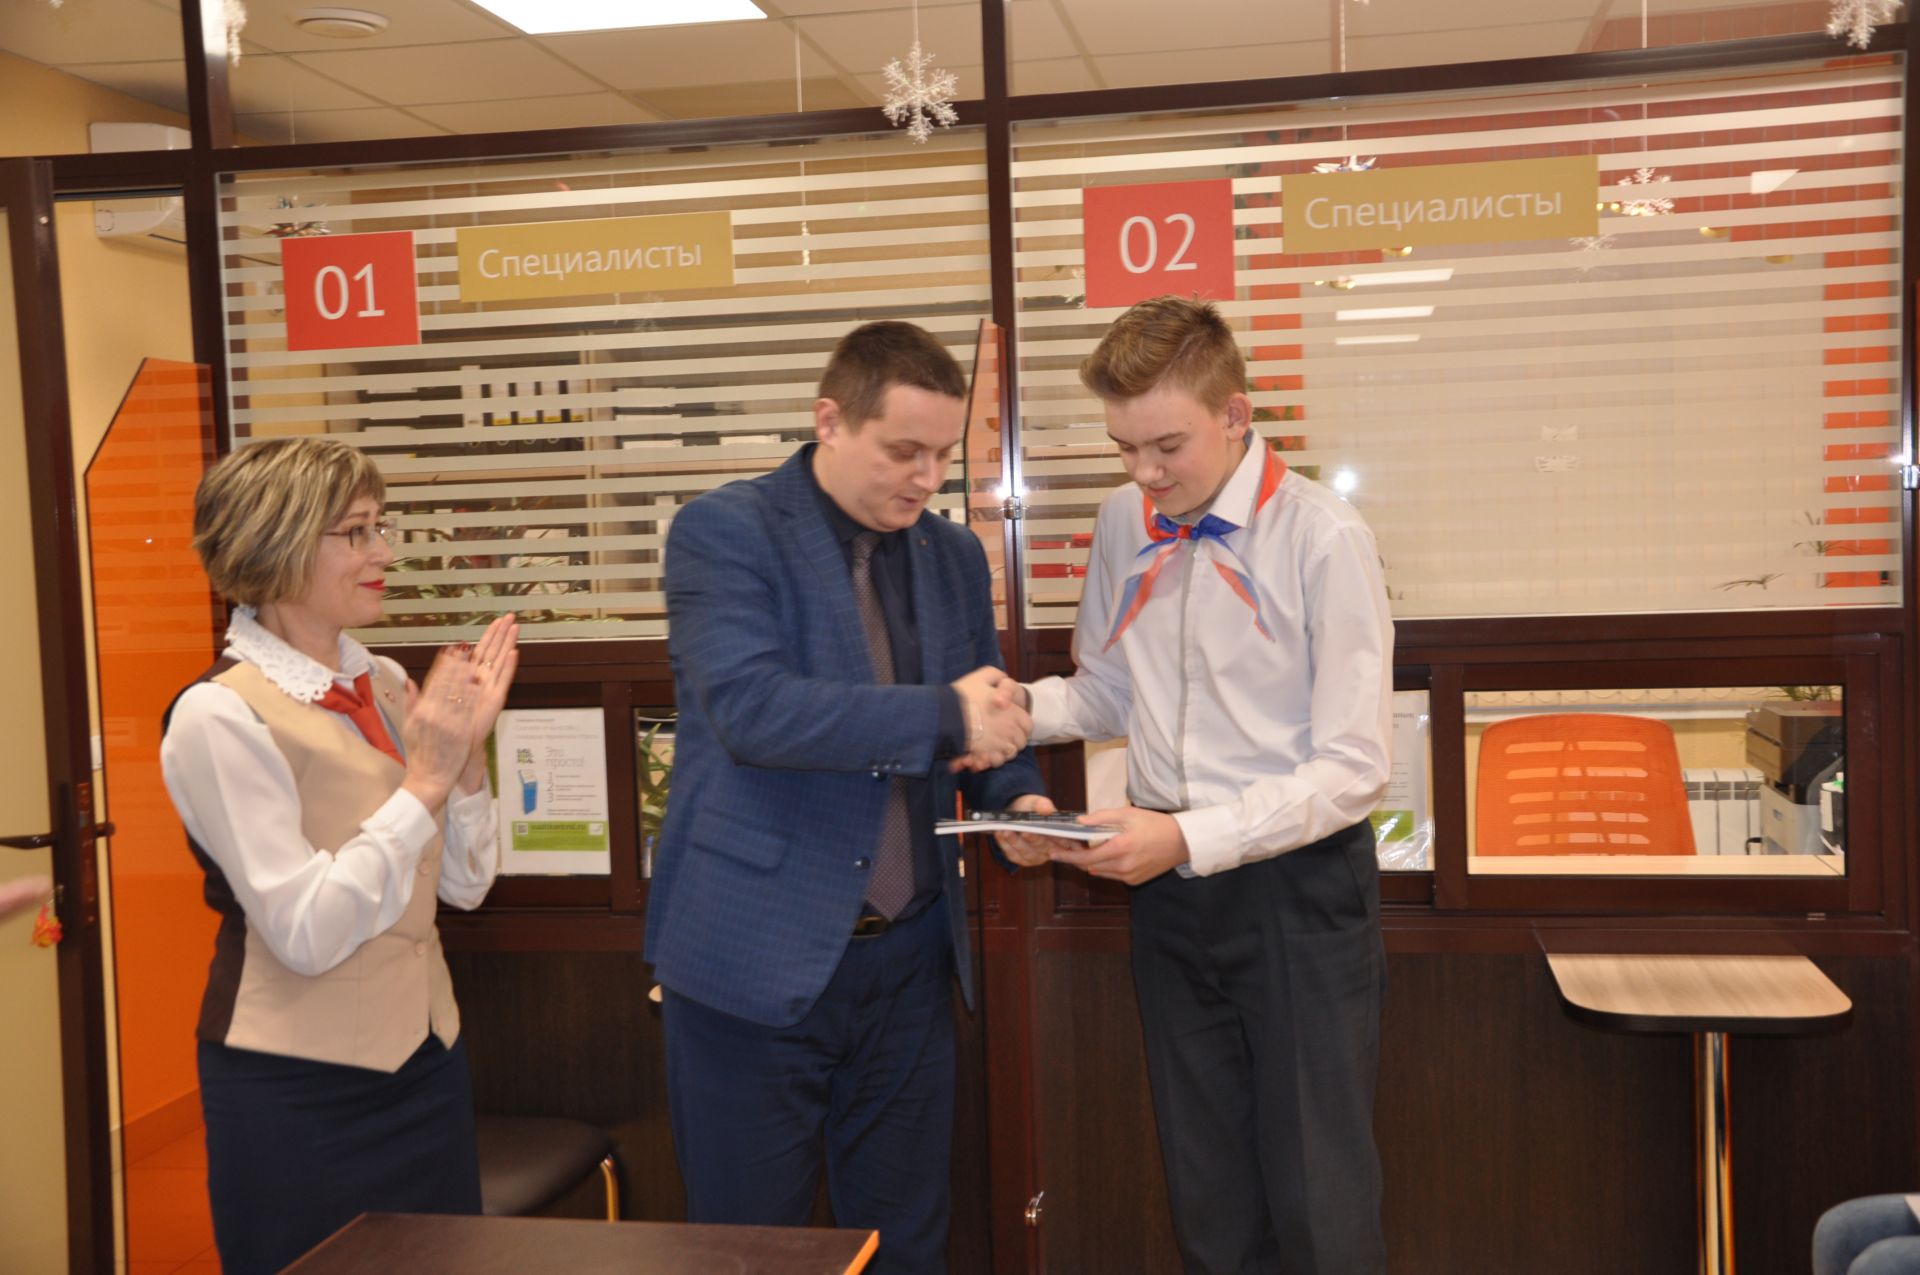 Россия Федерациясе Конституциясе көне уңаеннан 14 яшькә җиткән гражданнарга паспортлар тапшырылды